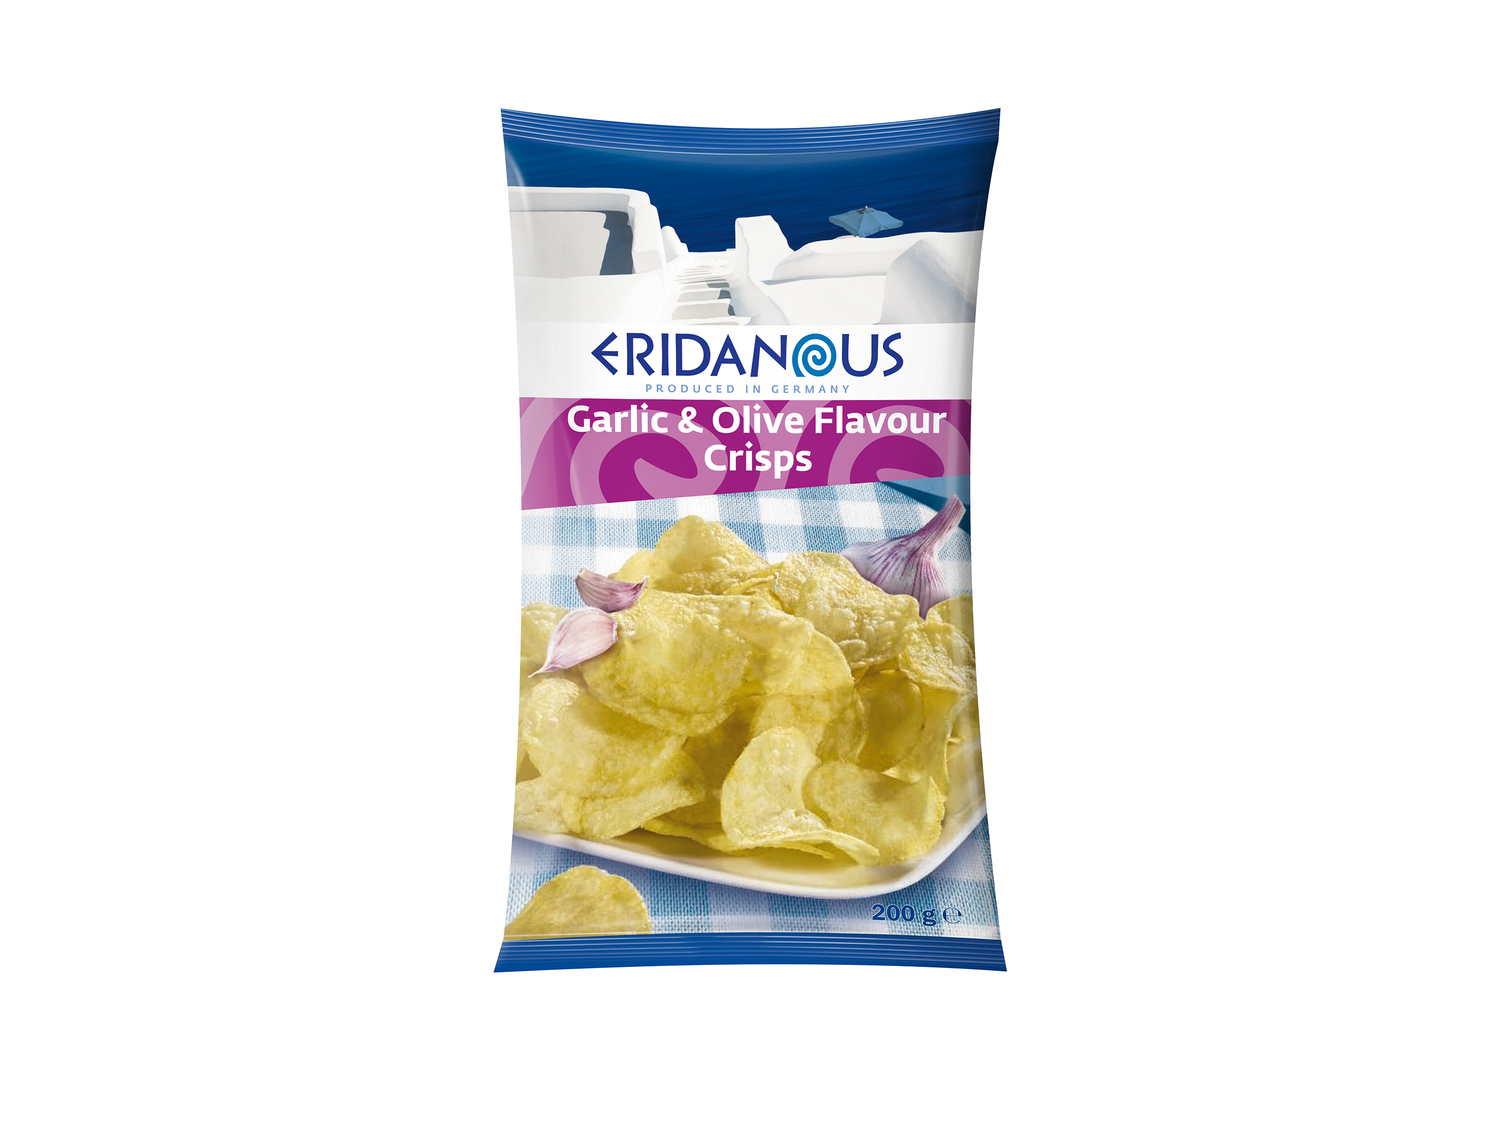 Chips1 , le prix 0.99 €  
-  Au choix : goût origan ou goût ail-olive